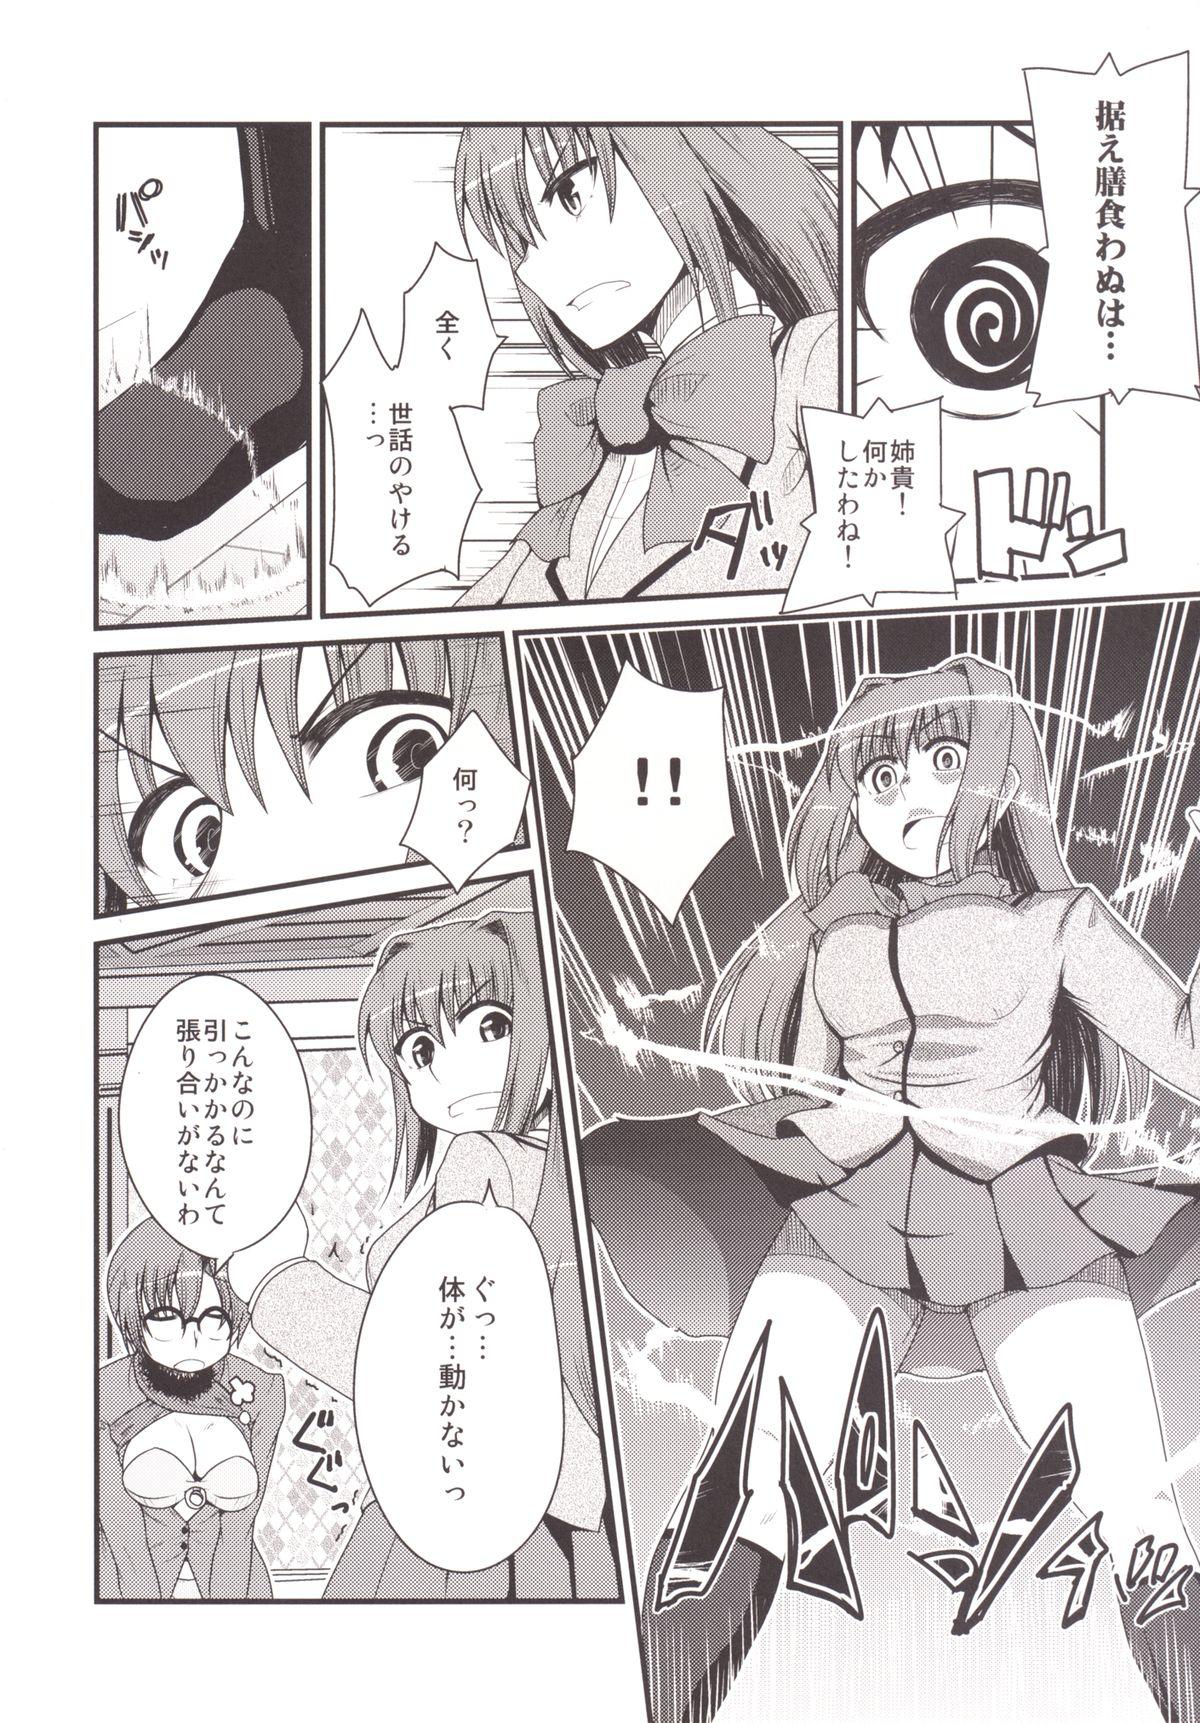 Outside Ittsu Main 2 - Mahou tsukai no yoru Boy Fuck Girl - Page 8